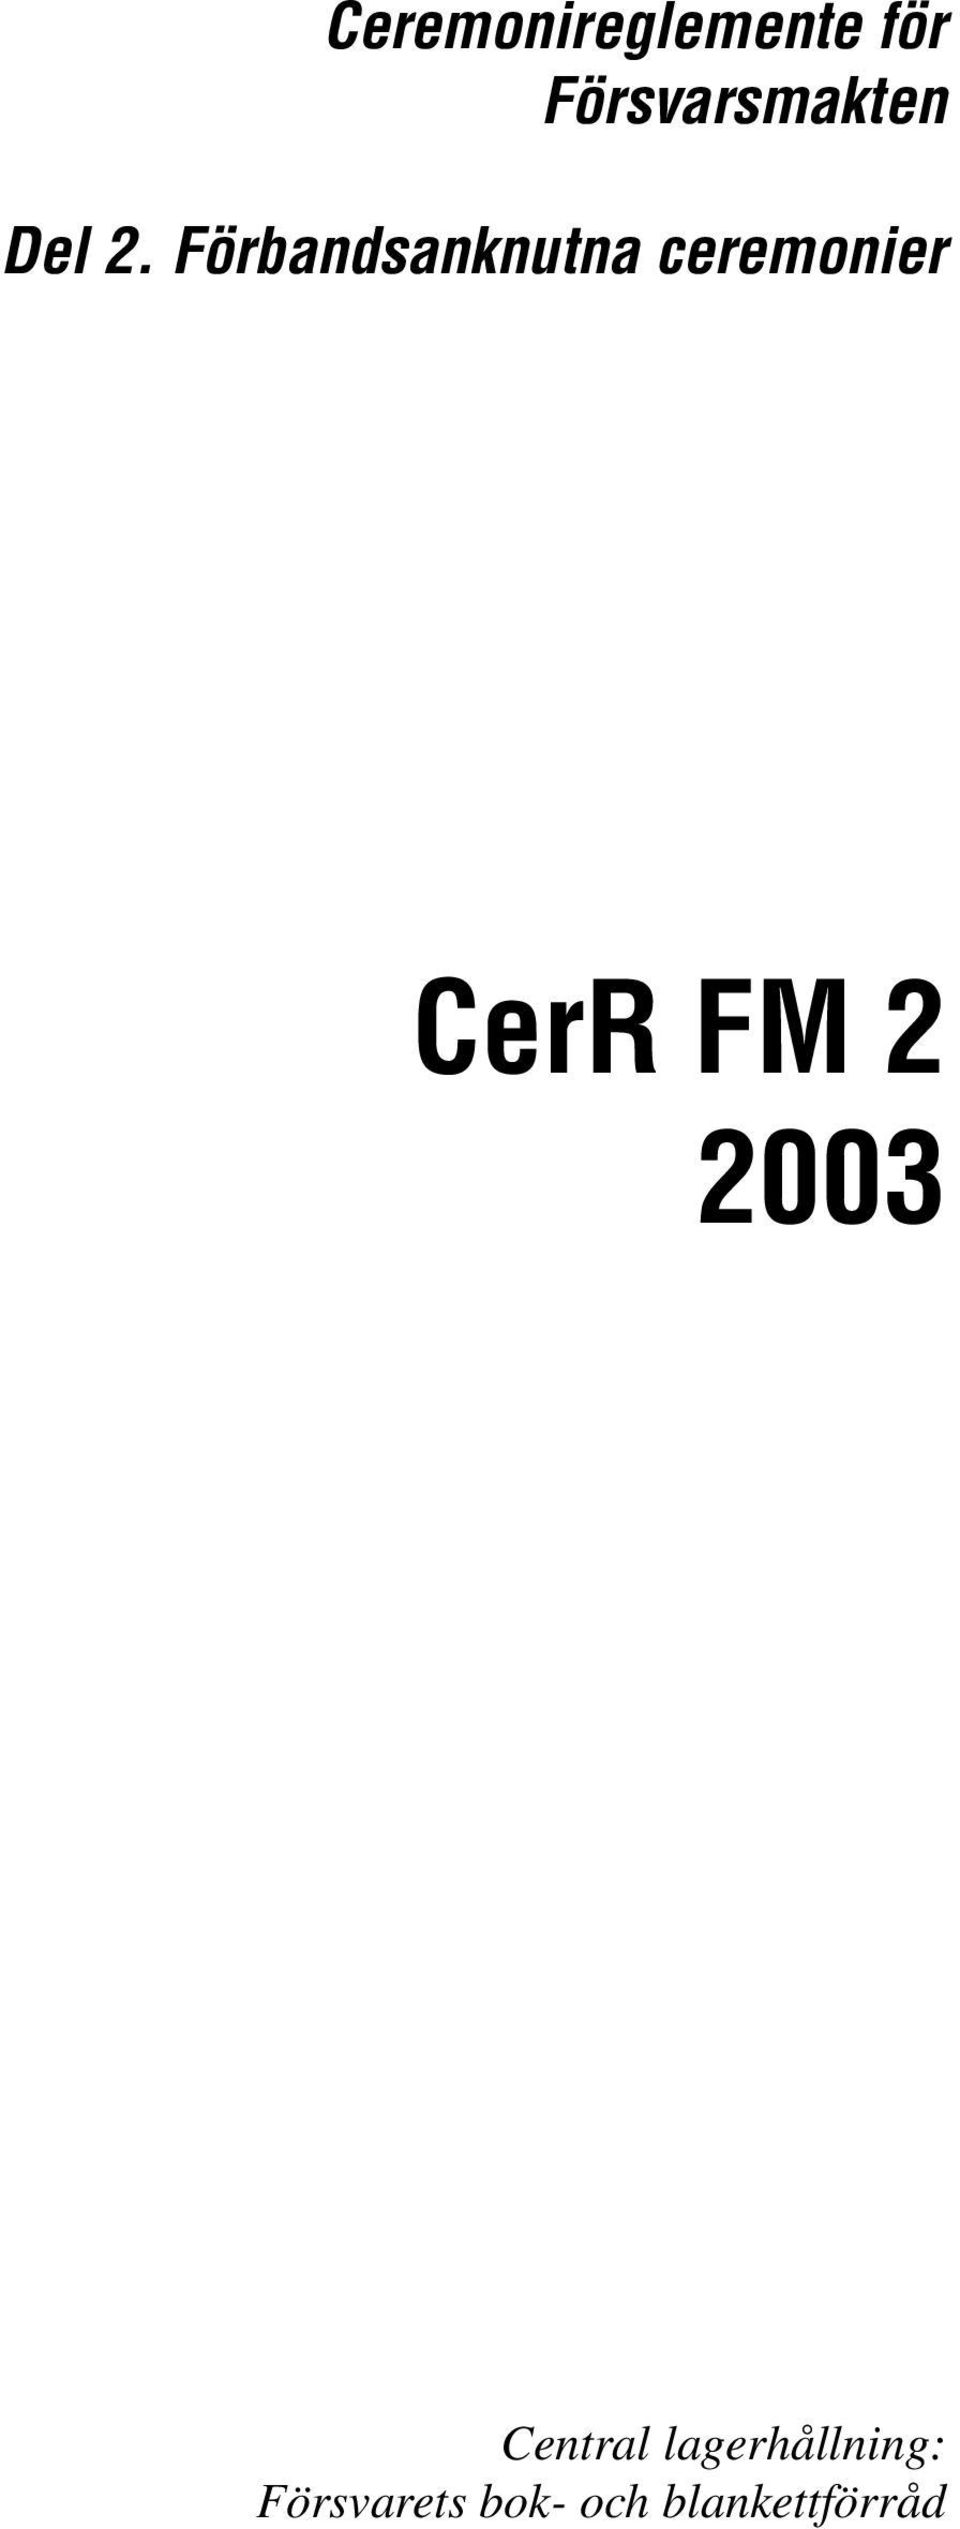 Förbandsanknutna ceremonier CerR FM